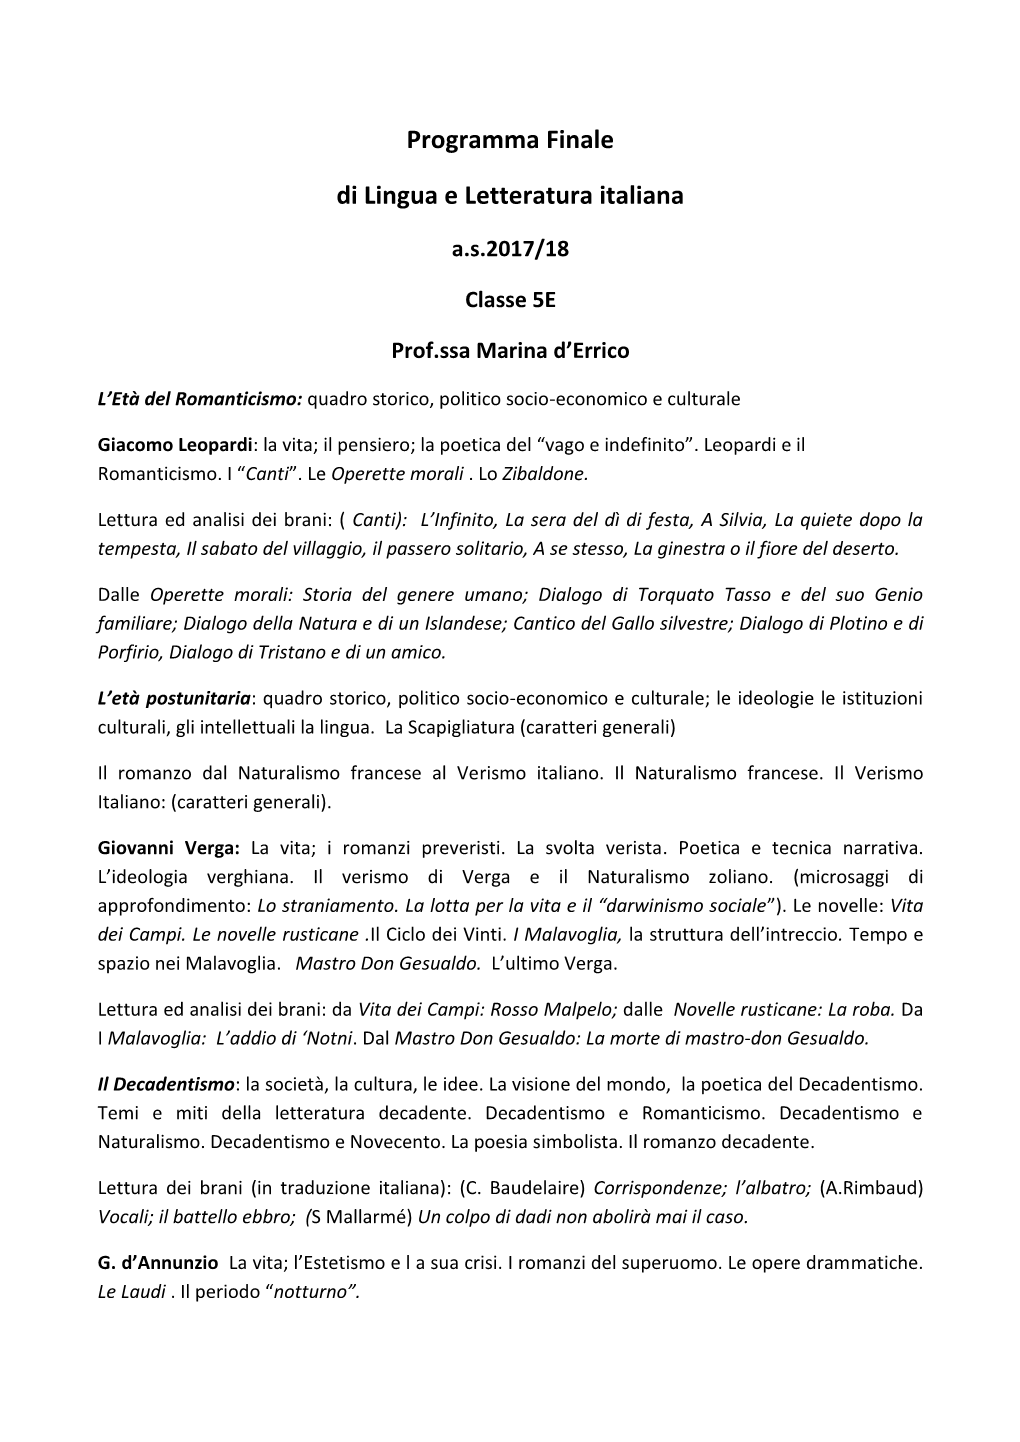 Programma Finale Di Lingua E Letteratura Italiana